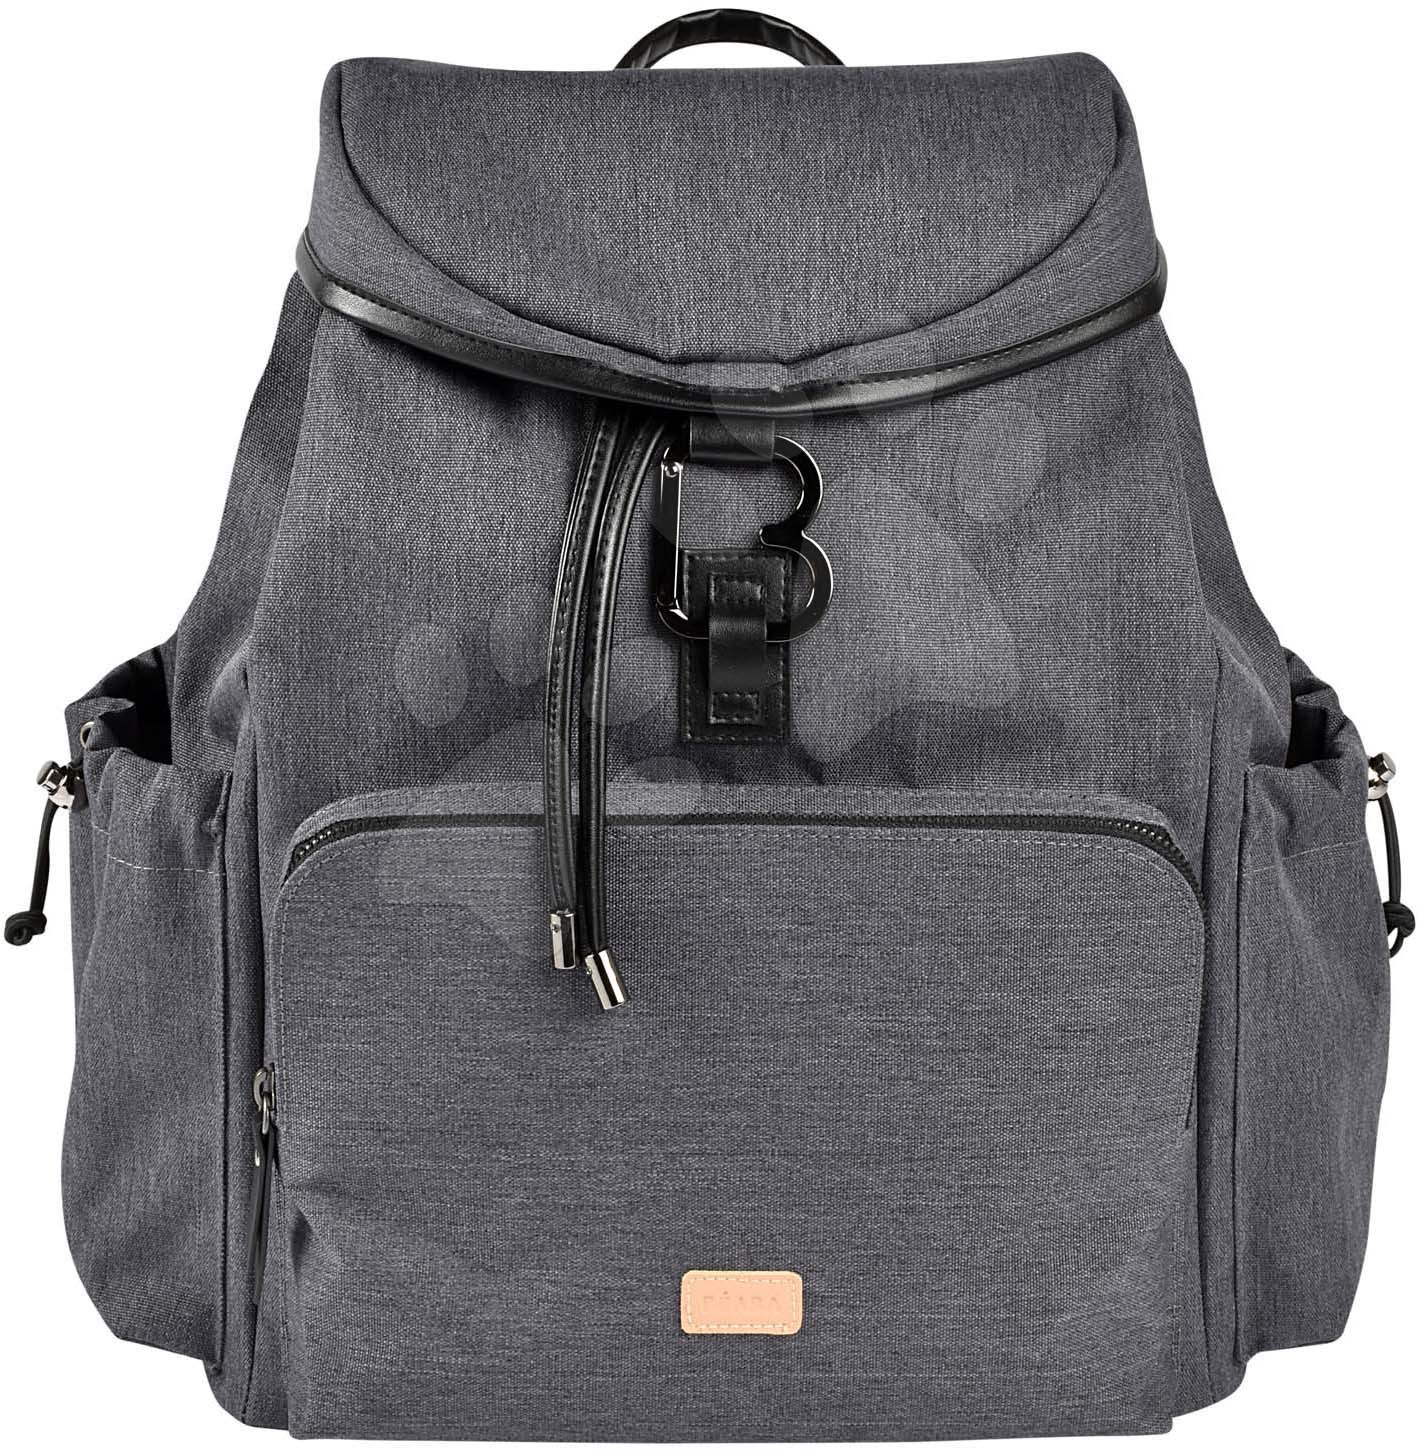 Prebaľovacie tašky ku kočíkom - Prebaľovacia taška ako batoh Vancouver Backpack Dark Grey Beaba s doplnkami 22 l objem 42 cm šedá